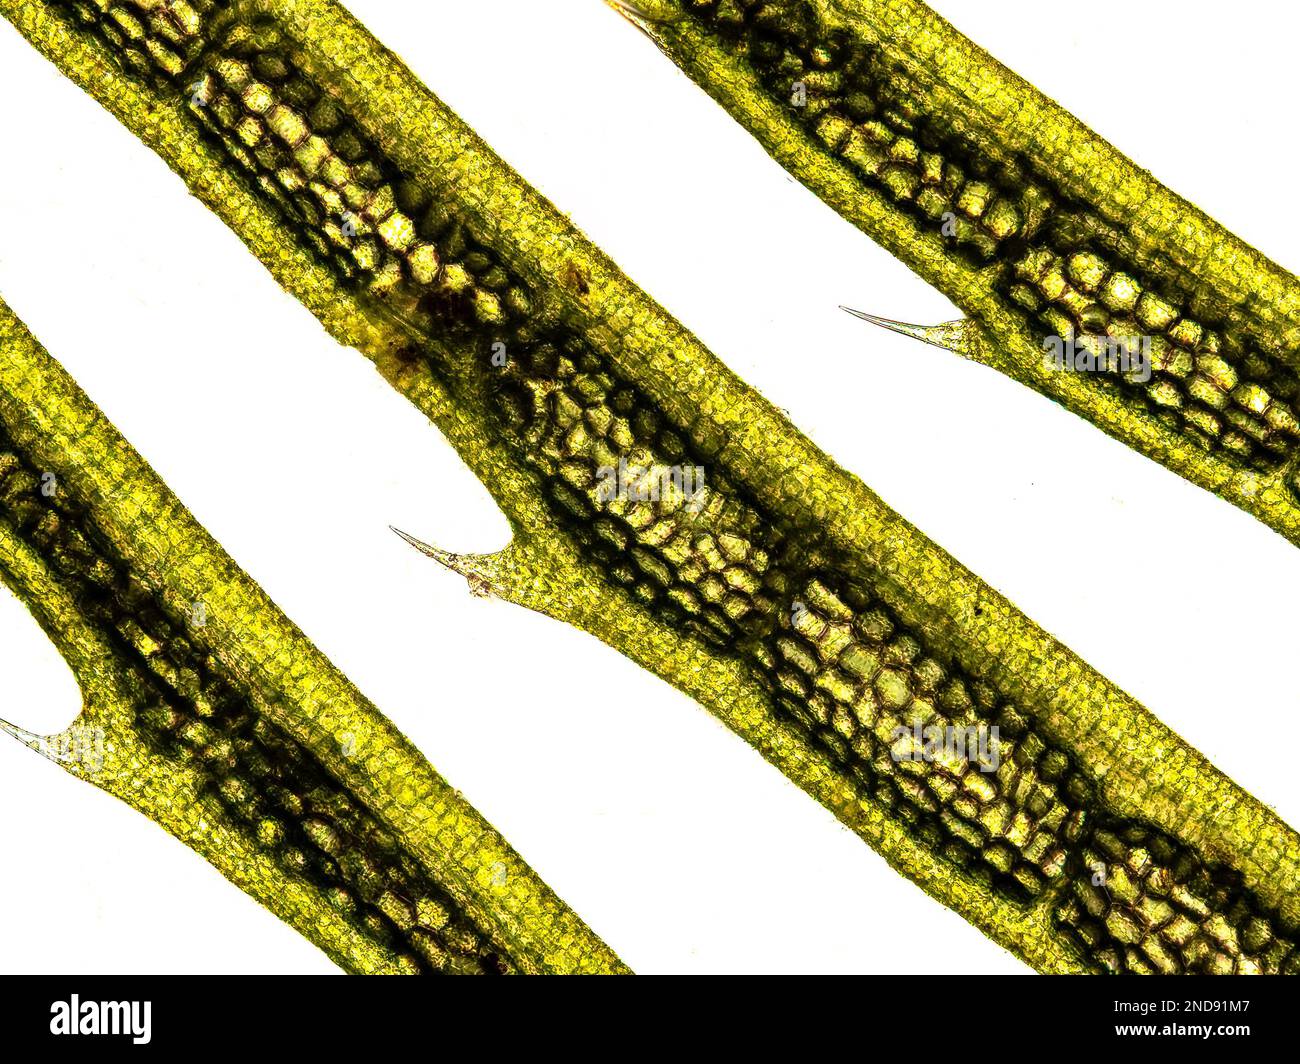 Plante aquatique (plante Hornwort - Ceratophyllum demersum) sous le microscope montrant les chloroplastes, les parois cellulaires et les poils - microscope optique x100 magn Banque D'Images